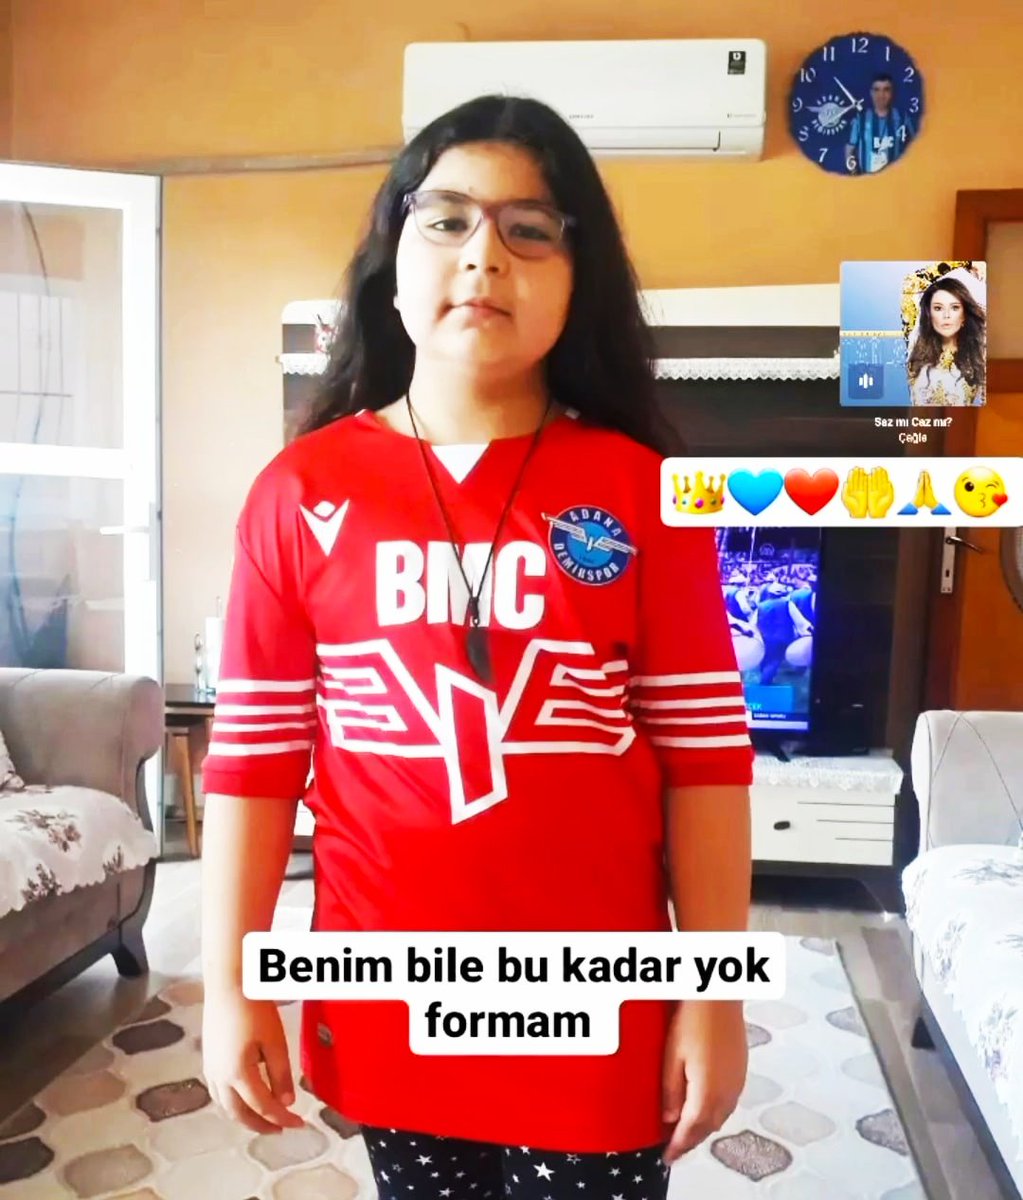 Adana'nın mavisi mavi aşkım kızım benim maç olmadığı zaman bile formasıyla geziyor @AdsKulubu 🤲🤲🤲